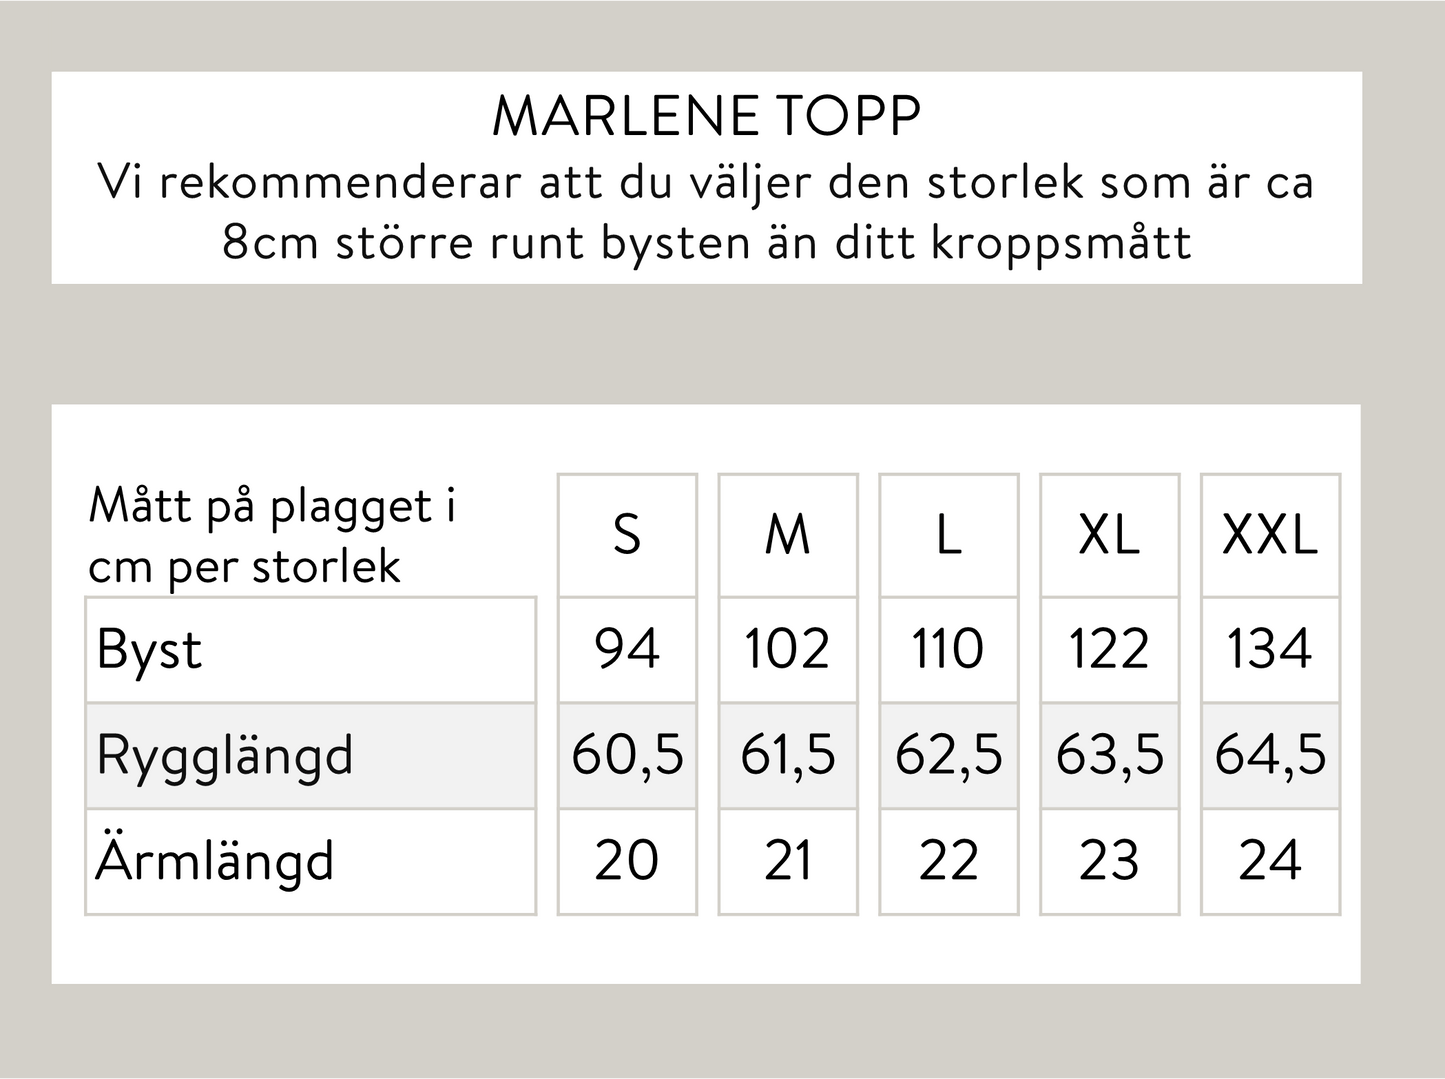 Marlene topp - Svart